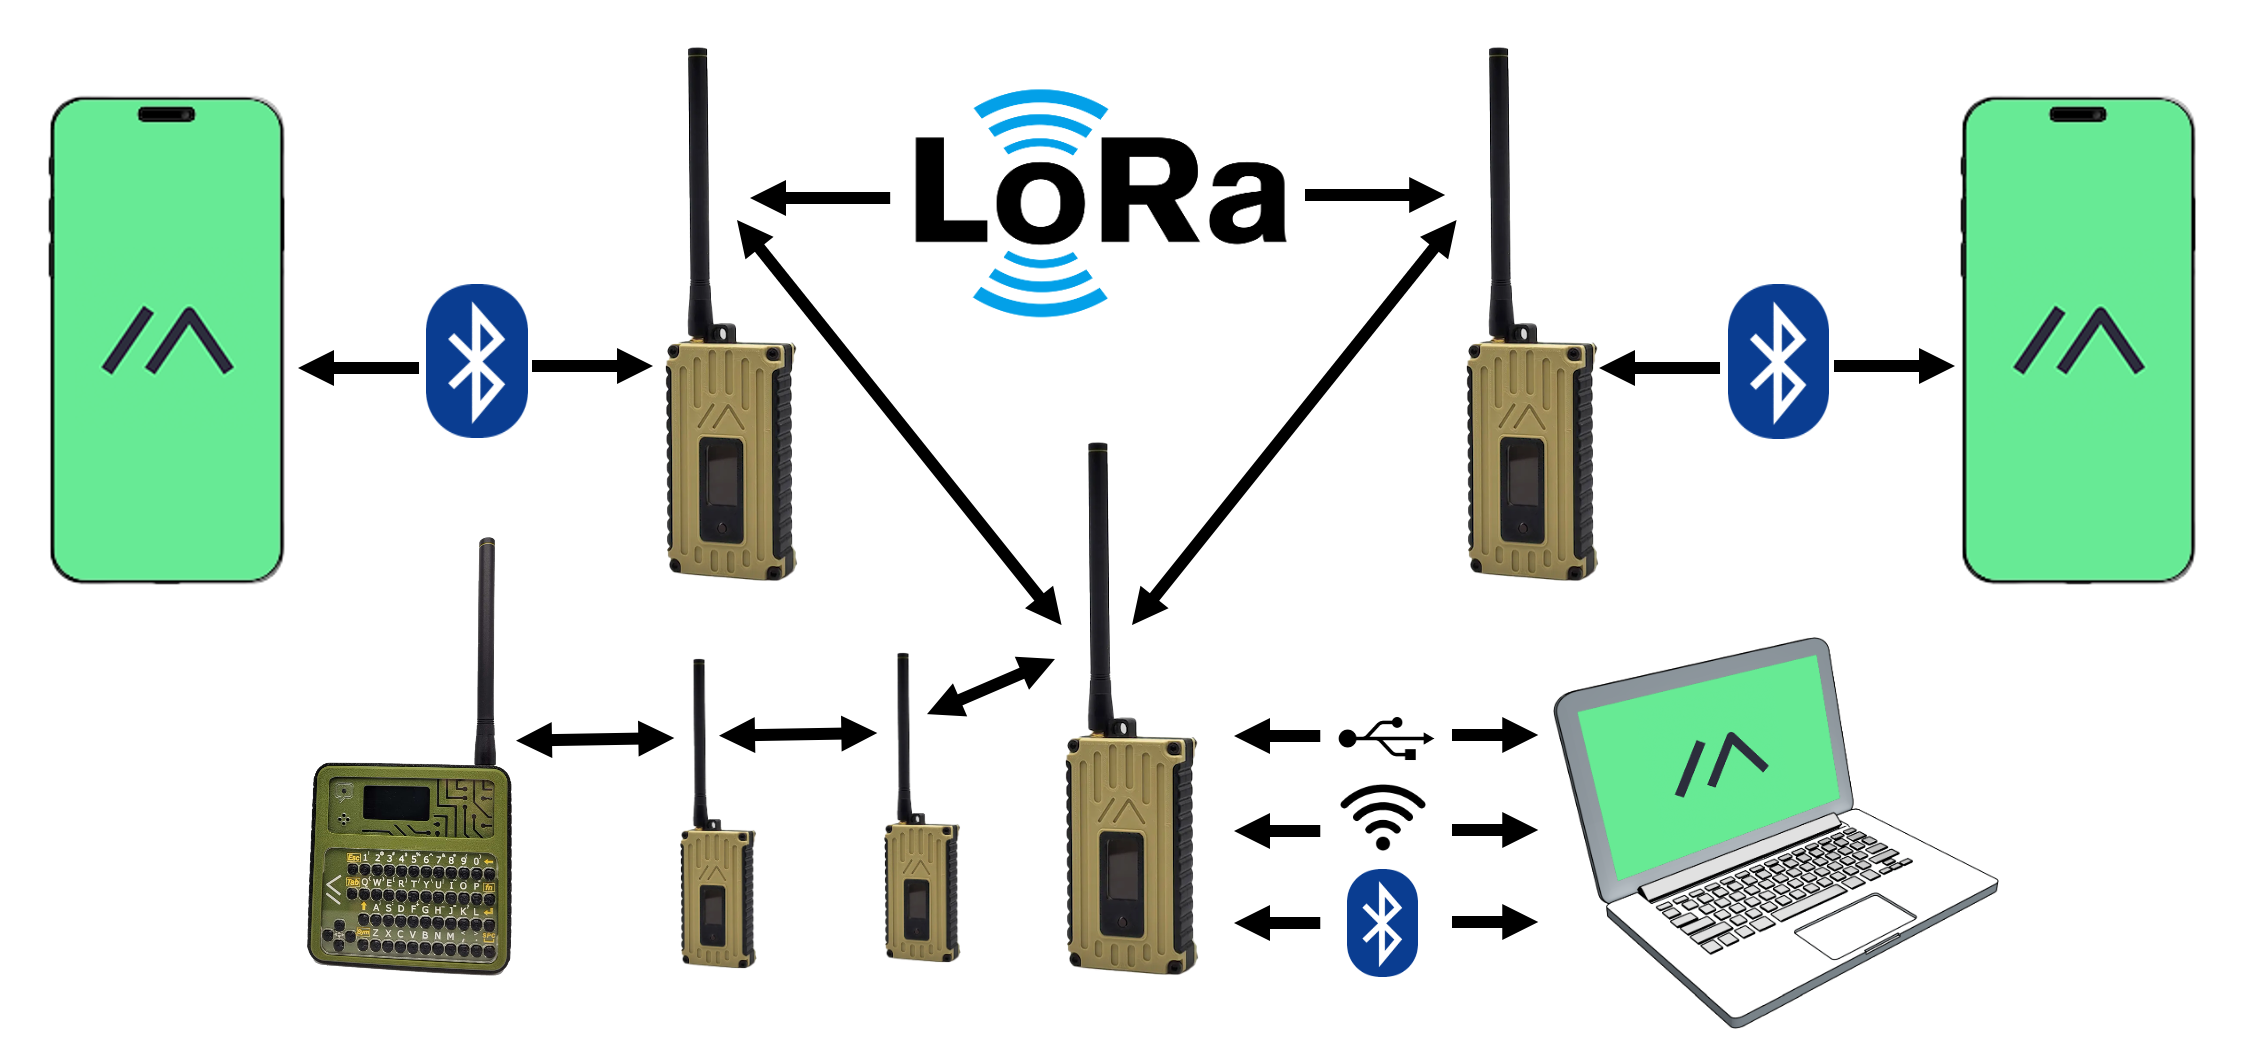 Skiss över hur ett meshtatic-nätverk med LoRa kan se ut